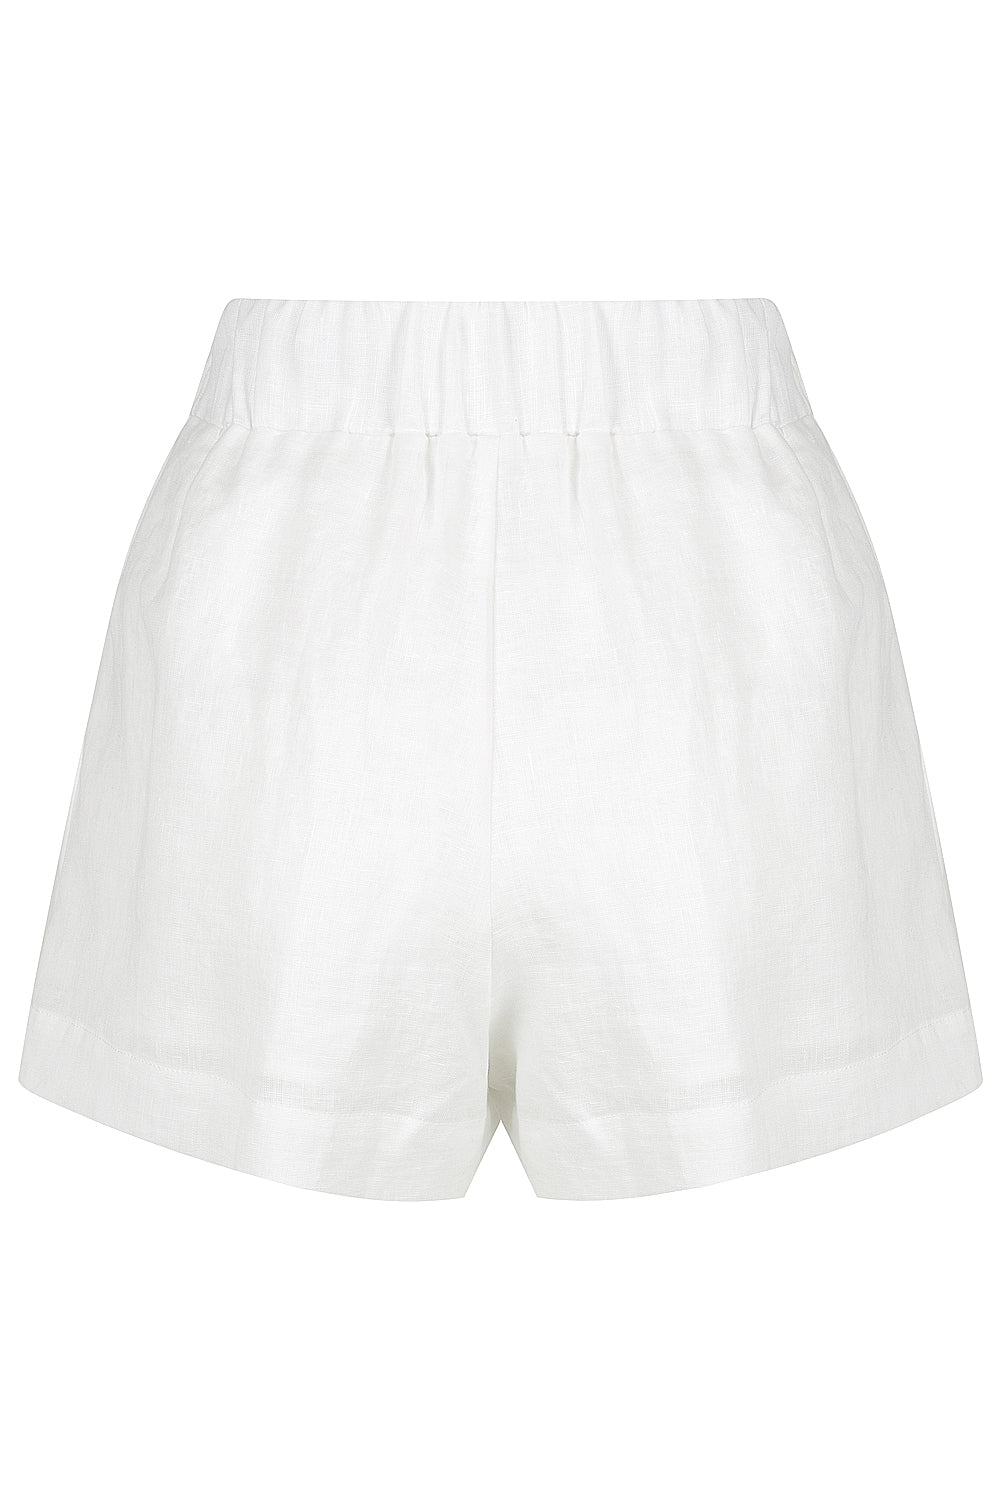 Dixon Shorts White